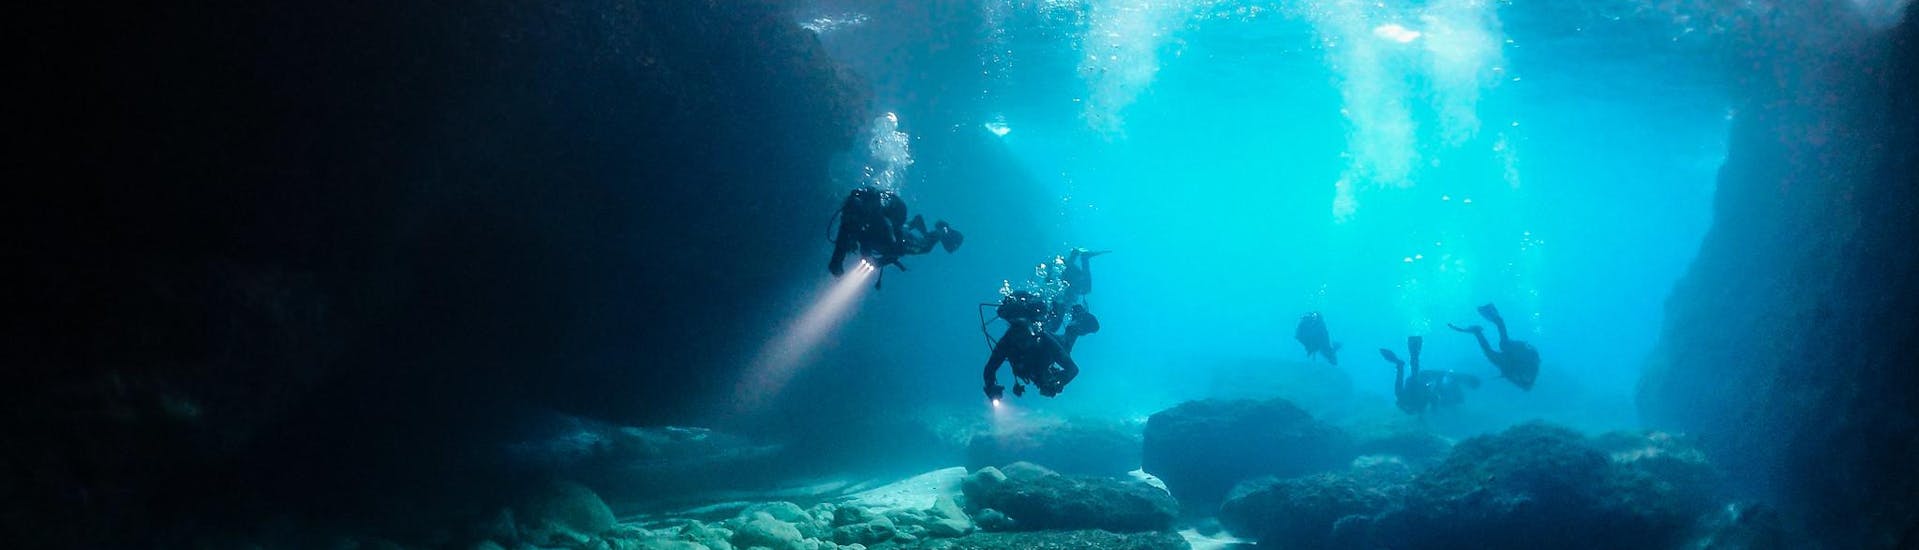 Een groep gecertificeerde duikers tijdens een activiteit in een onderwatergrot.